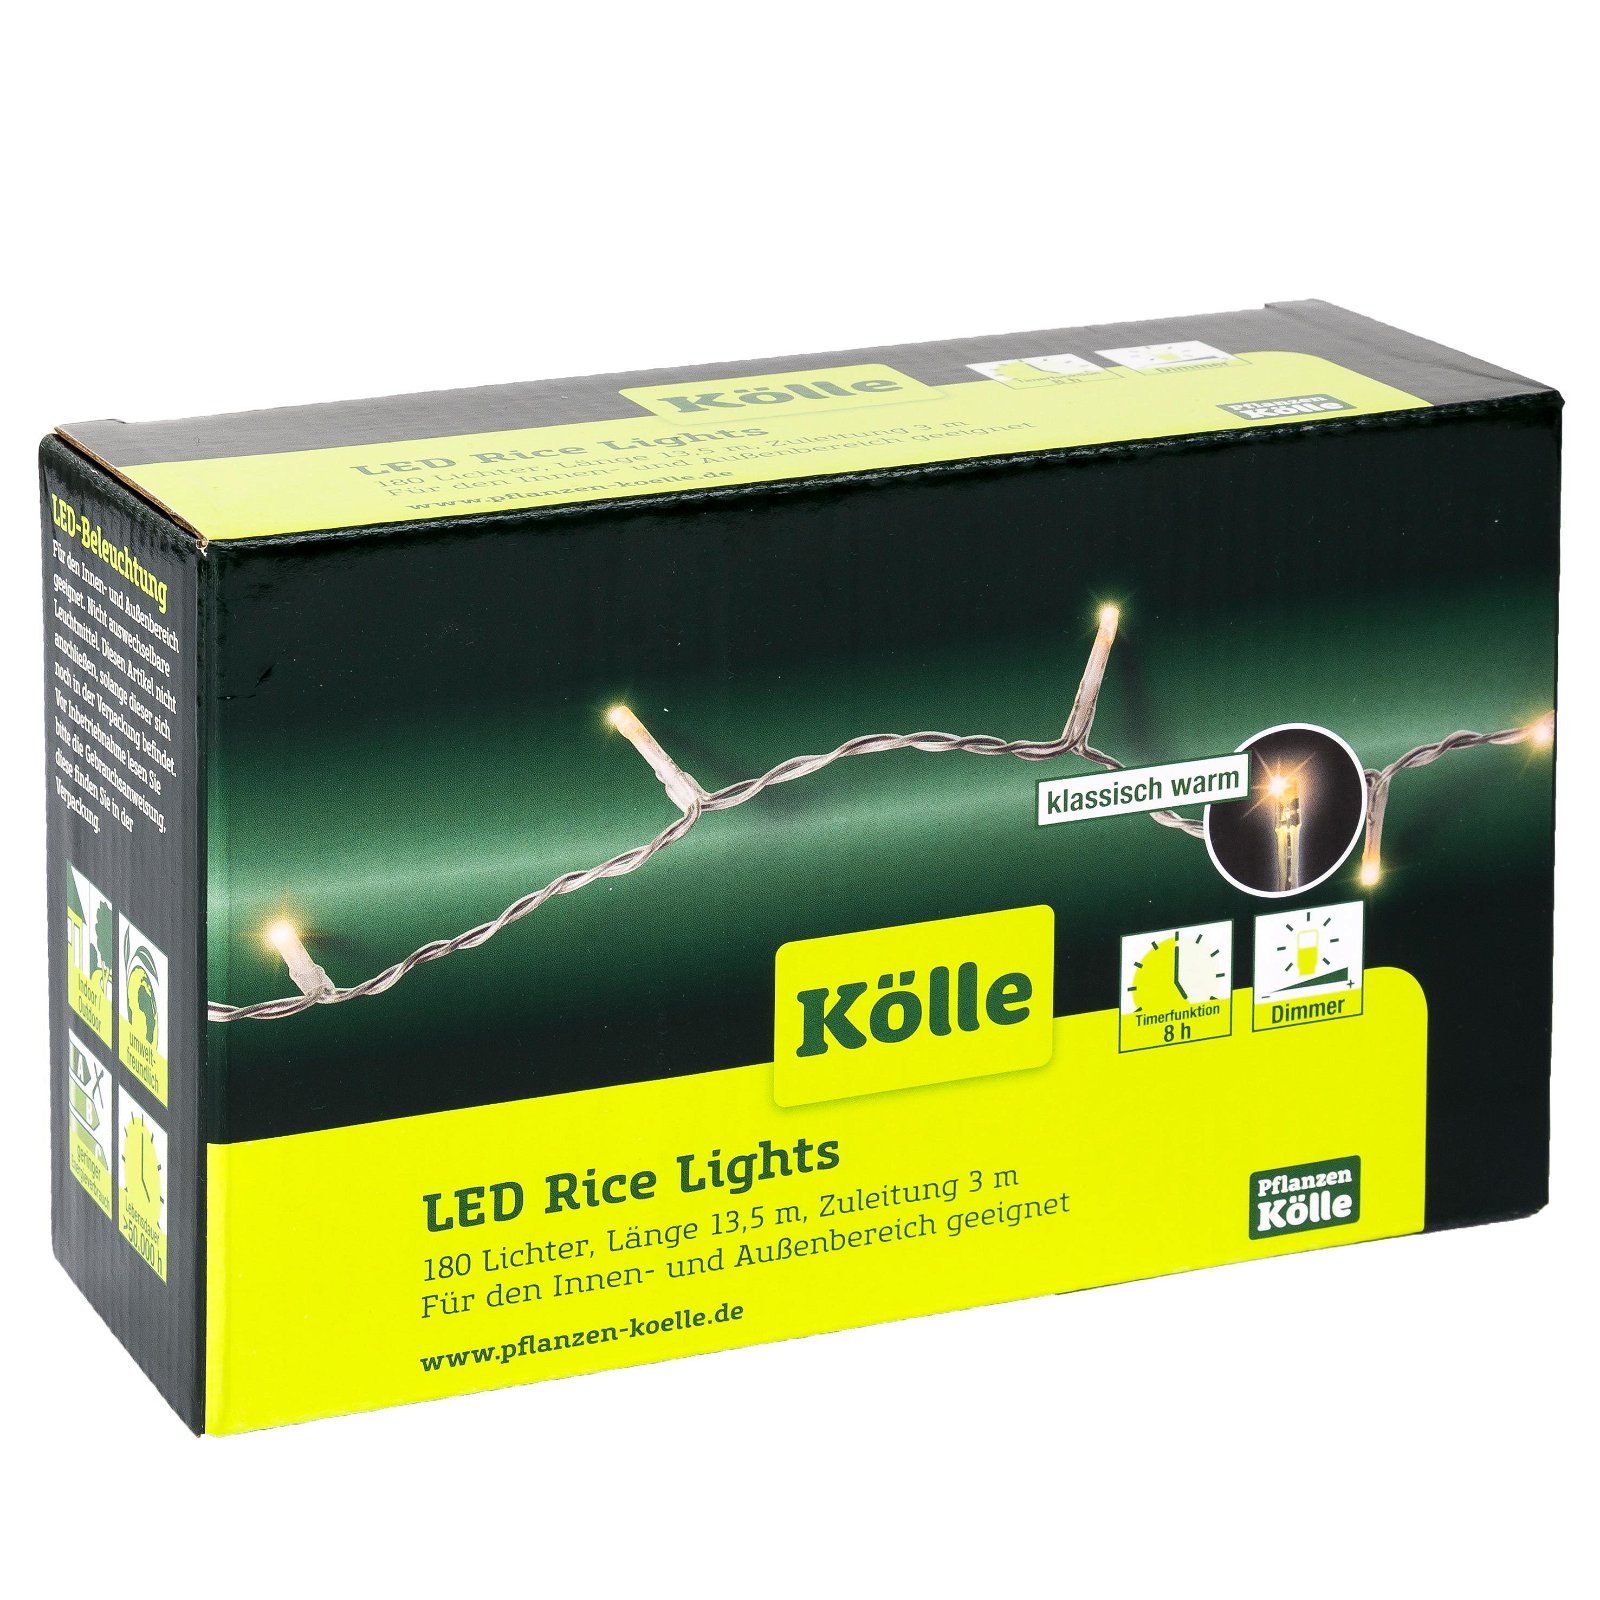 LED Lichterkette Rice Lights, 180 LEDs, klassisch warm, 13,5 m, Timerfunktion